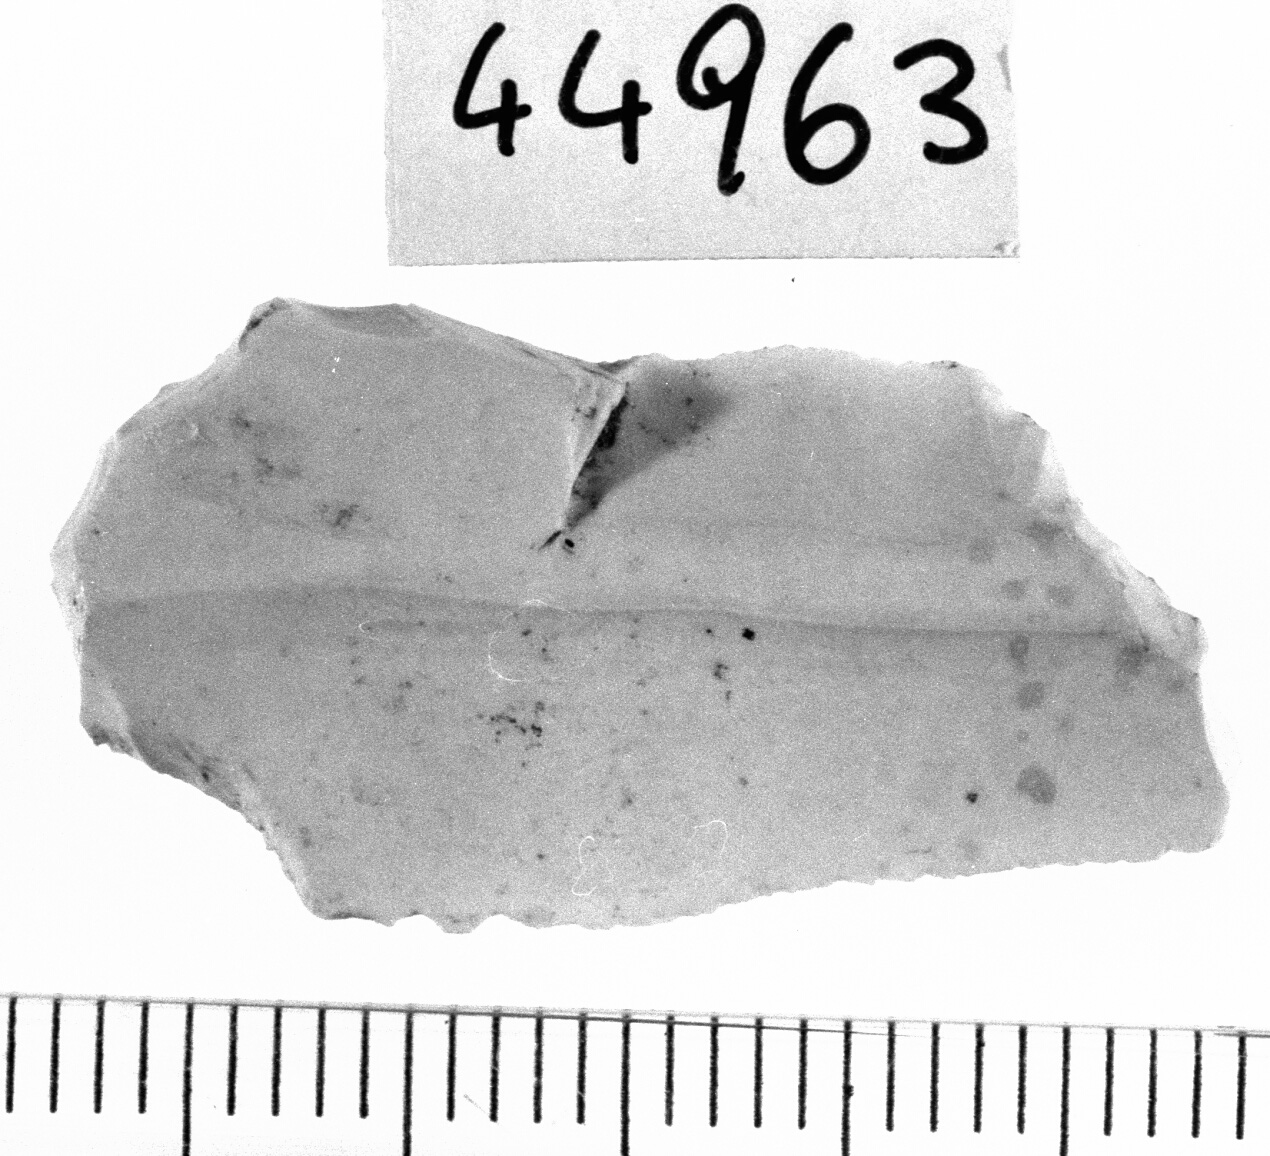 grattatoio a spalla opposto a bulino piano (Neolitico)